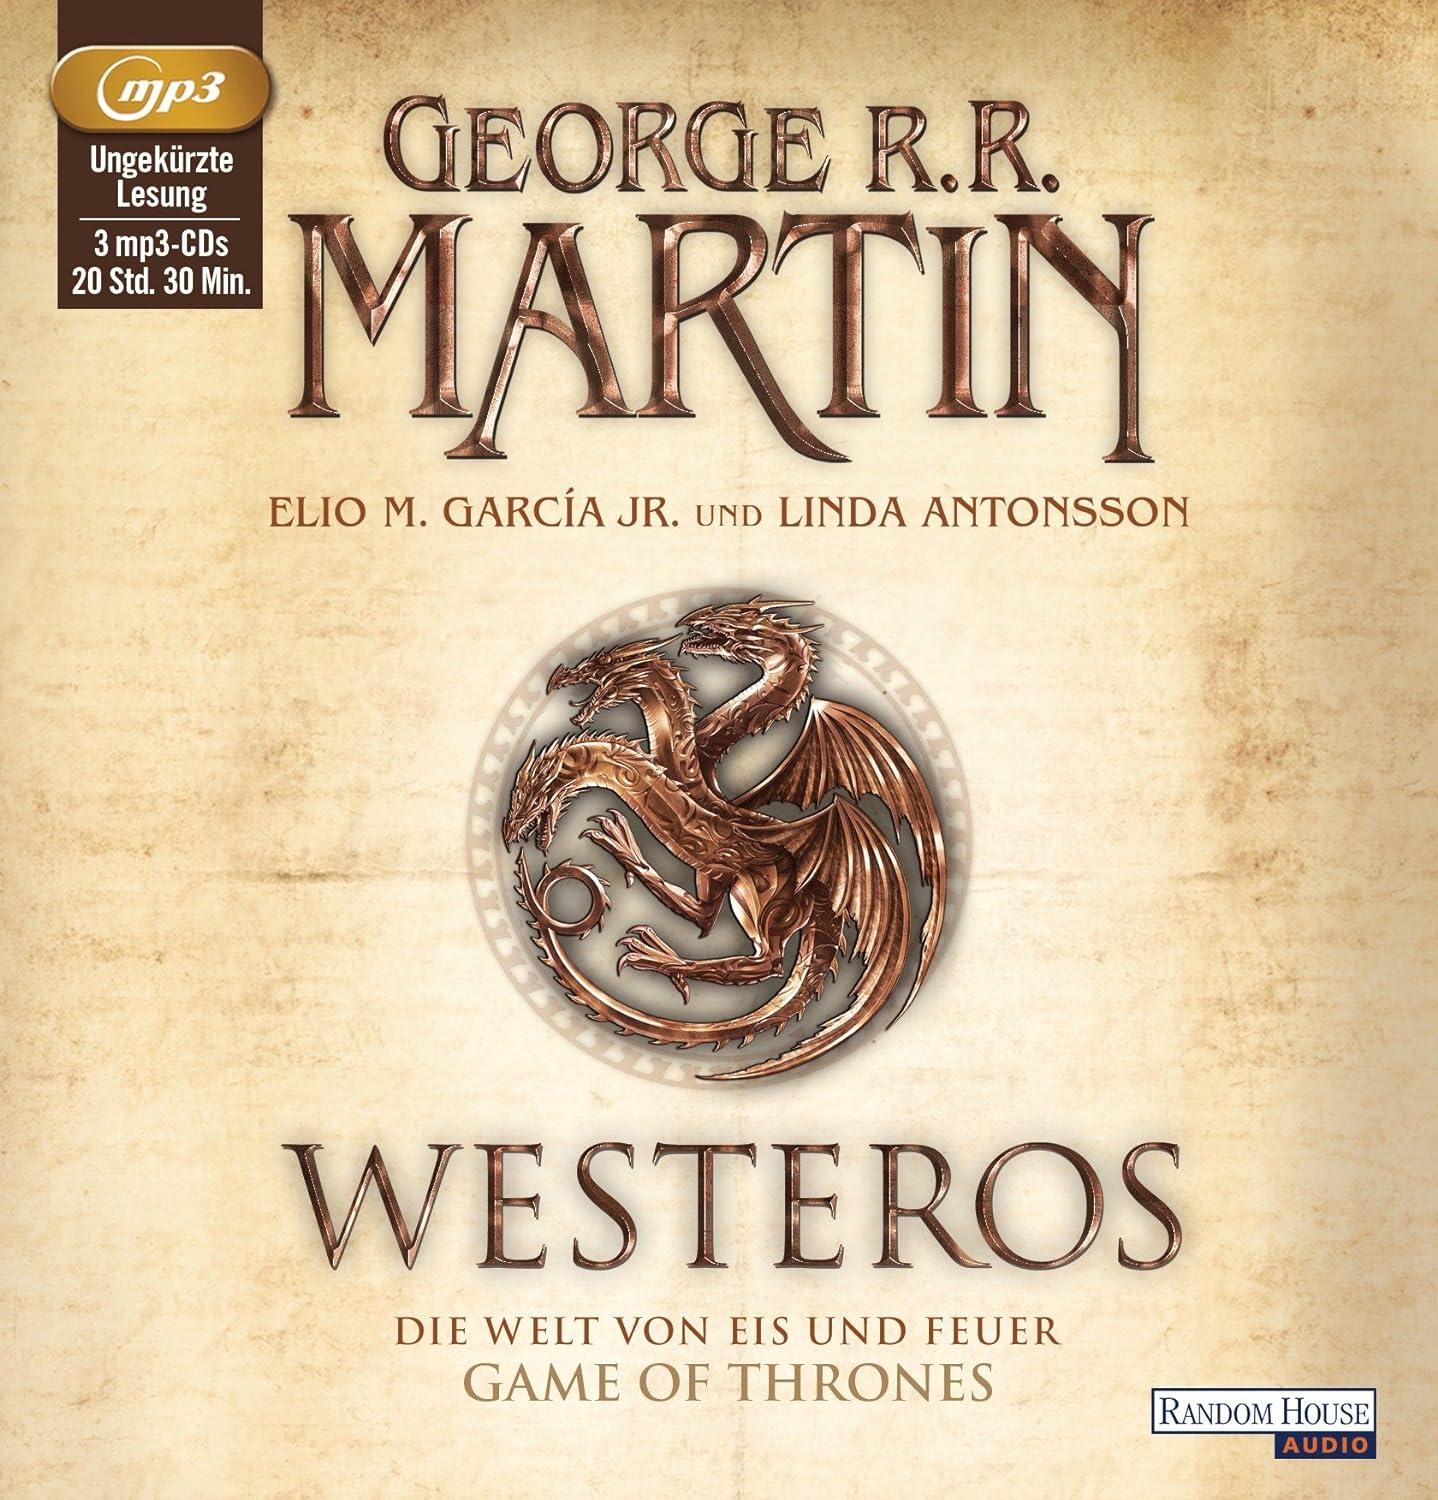 George R R Martin - Westeros Eis und Feuer MP3 Game of Thrones